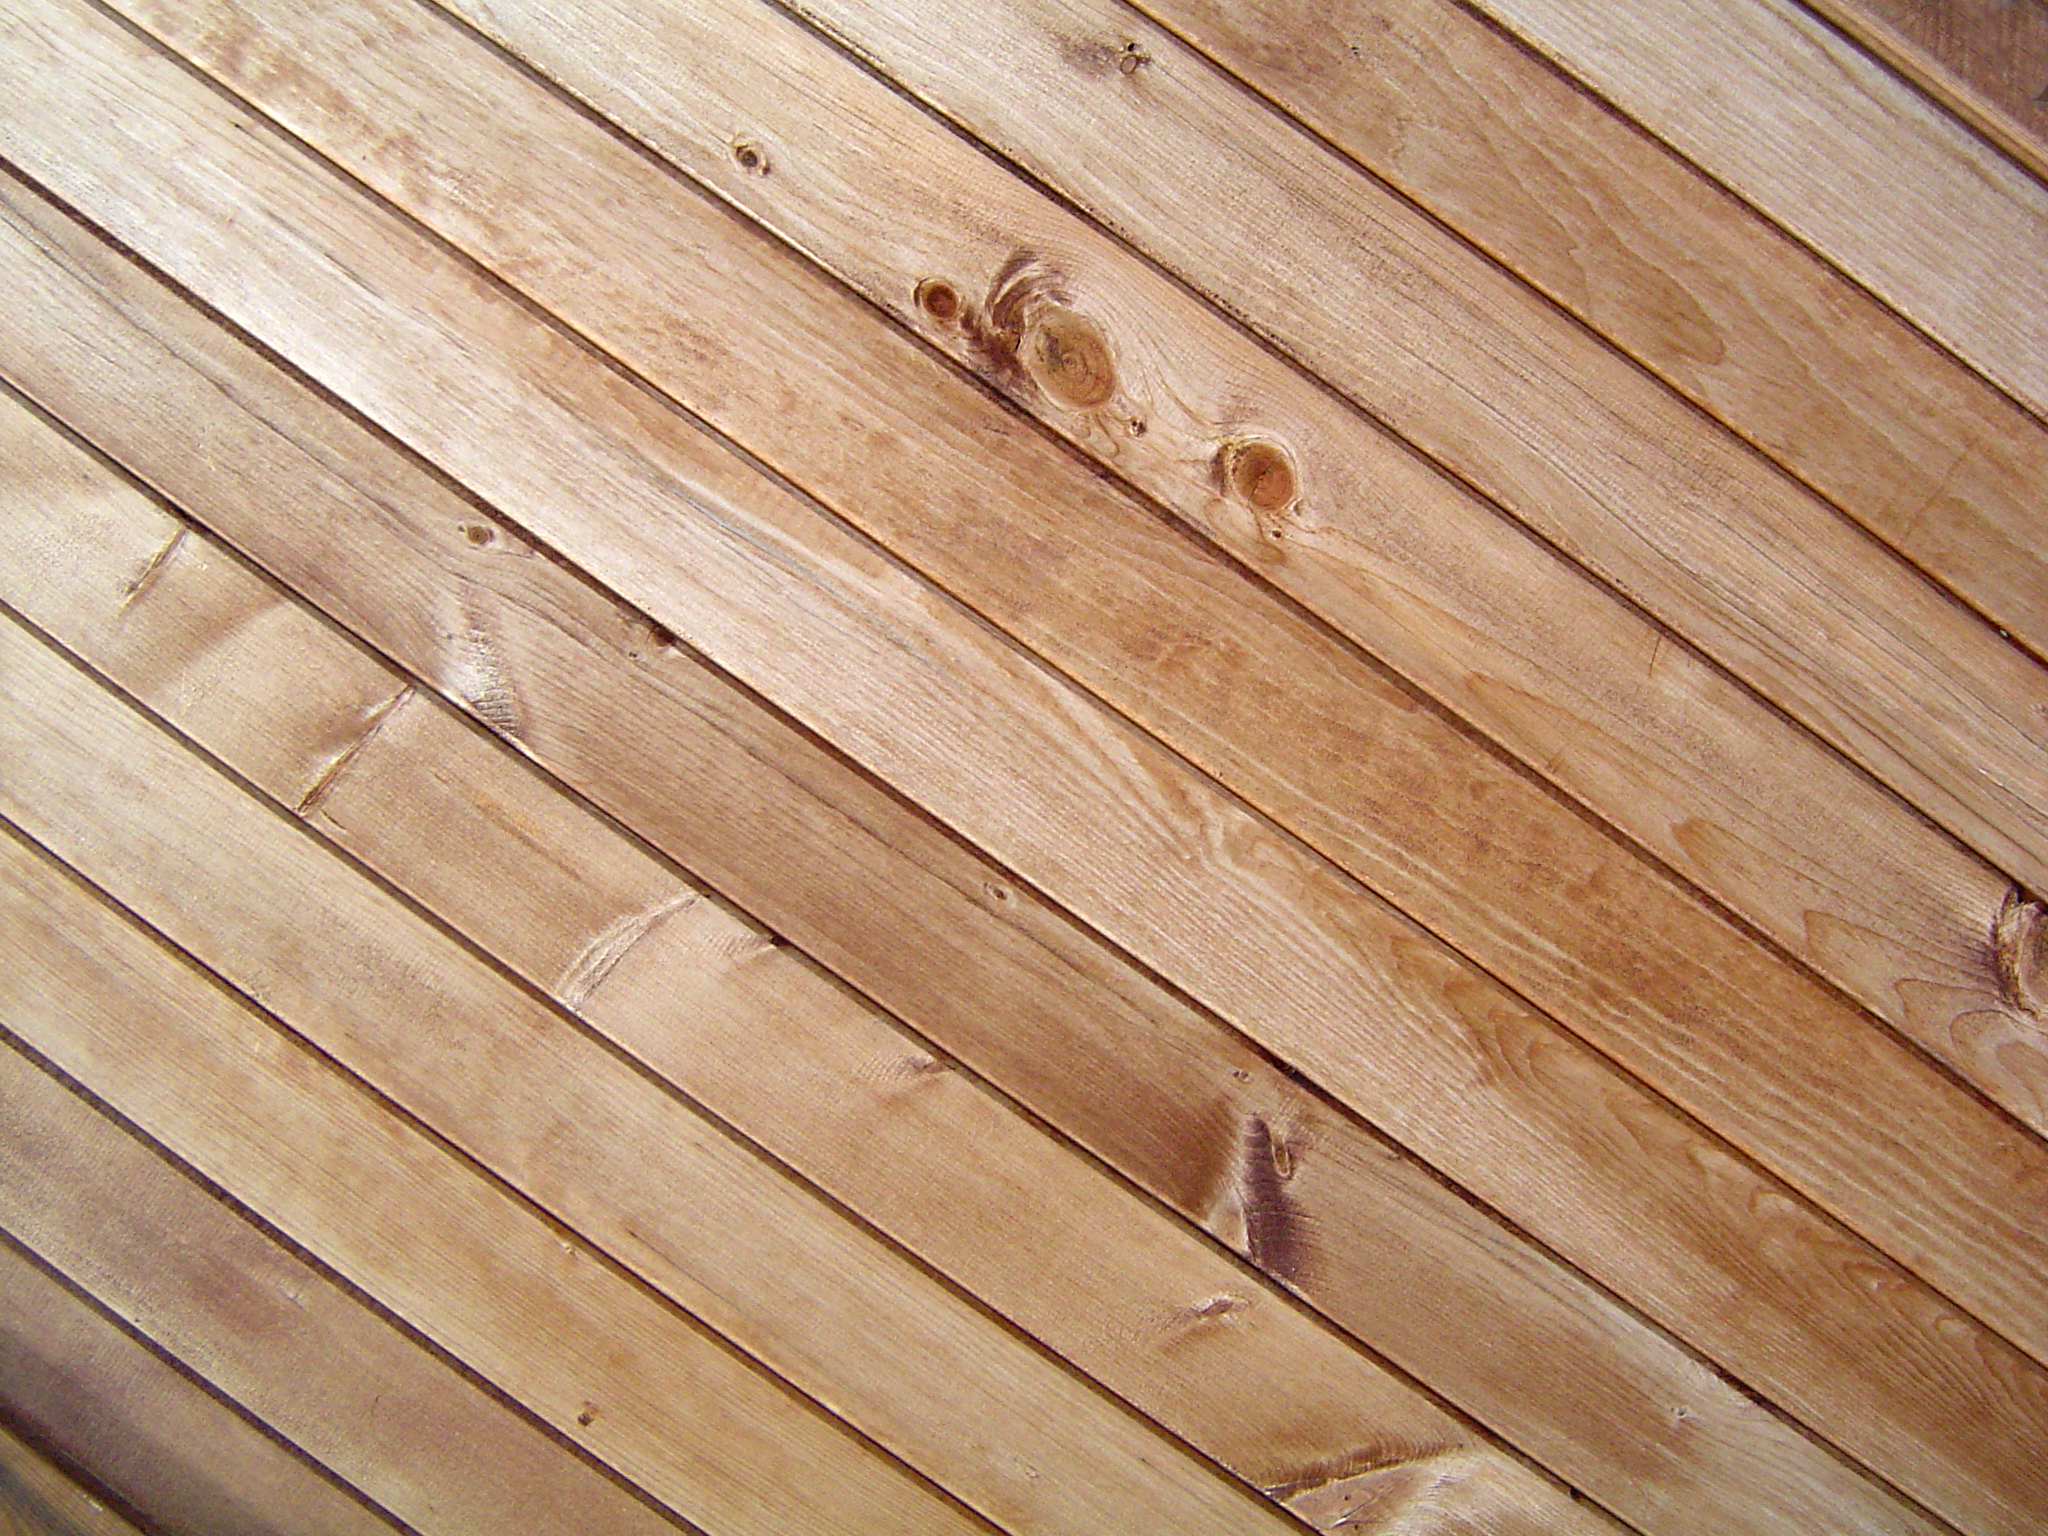 Wood wooden floor textures desktop 2048x1536 wanted wallpaper